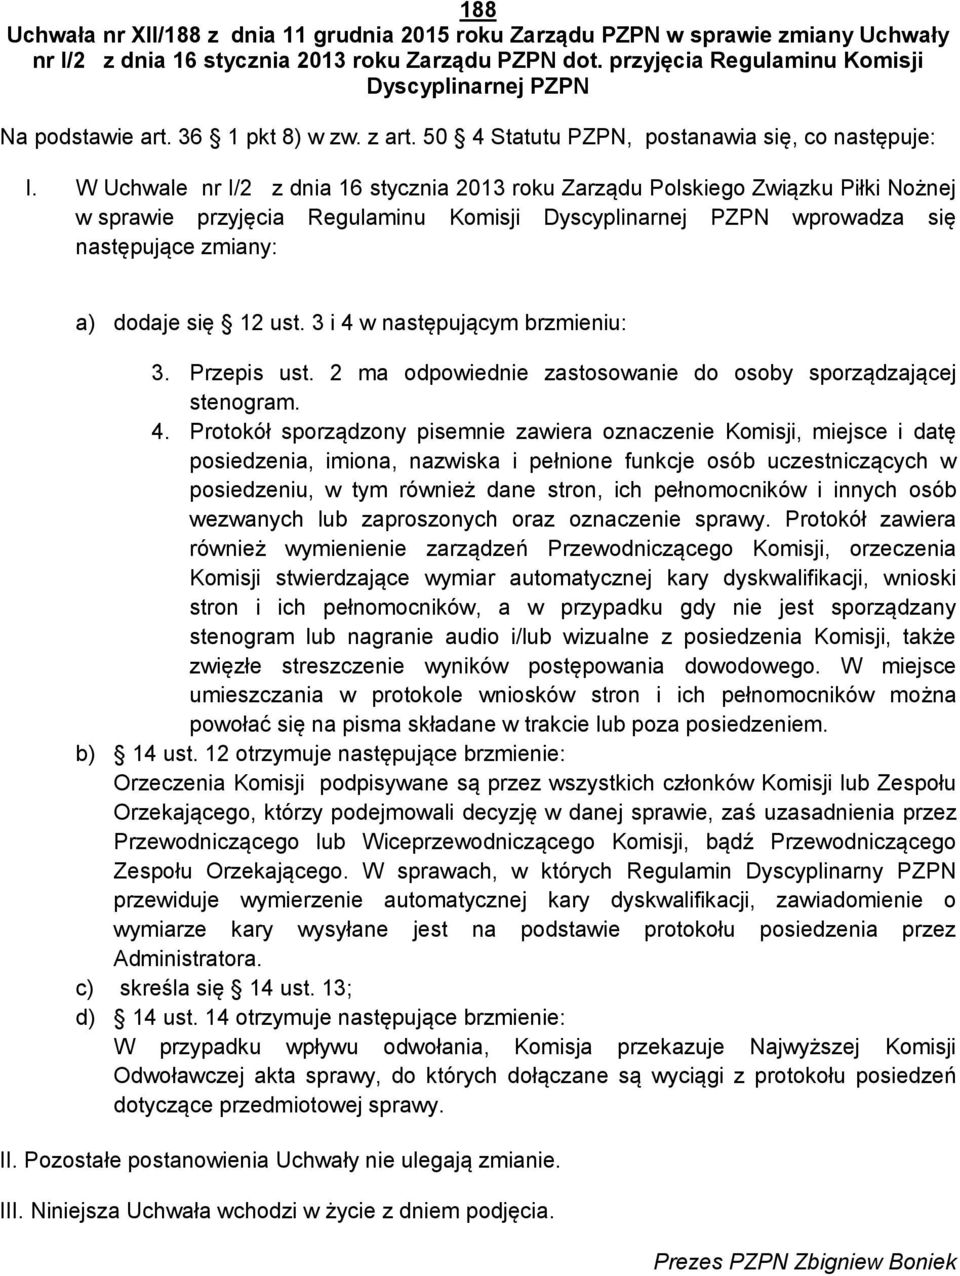 W Uchwale nr I/2 z dnia 16 stycznia 2013 roku Zarządu Polskiego Związku Piłki Nożnej w sprawie przyjęcia Regulaminu Komisji Dyscyplinarnej PZPN wprowadza się następujące zmiany: a) dodaje się 12 ust.